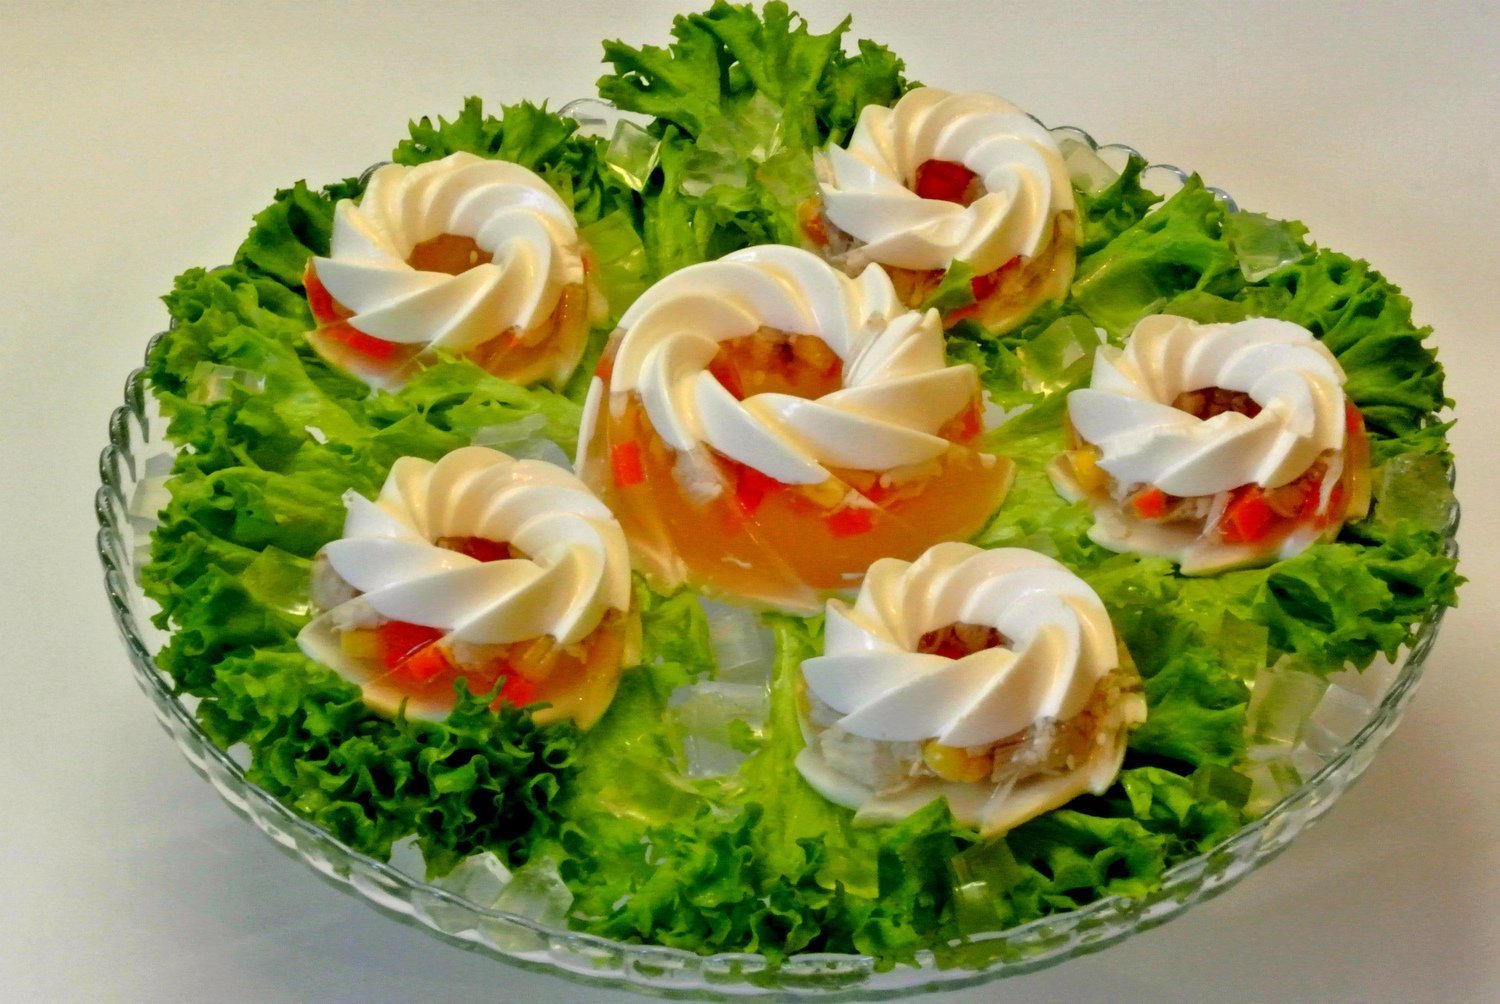 Как украсить салат, показываю 5 идей украшения салатов на праздничный стол